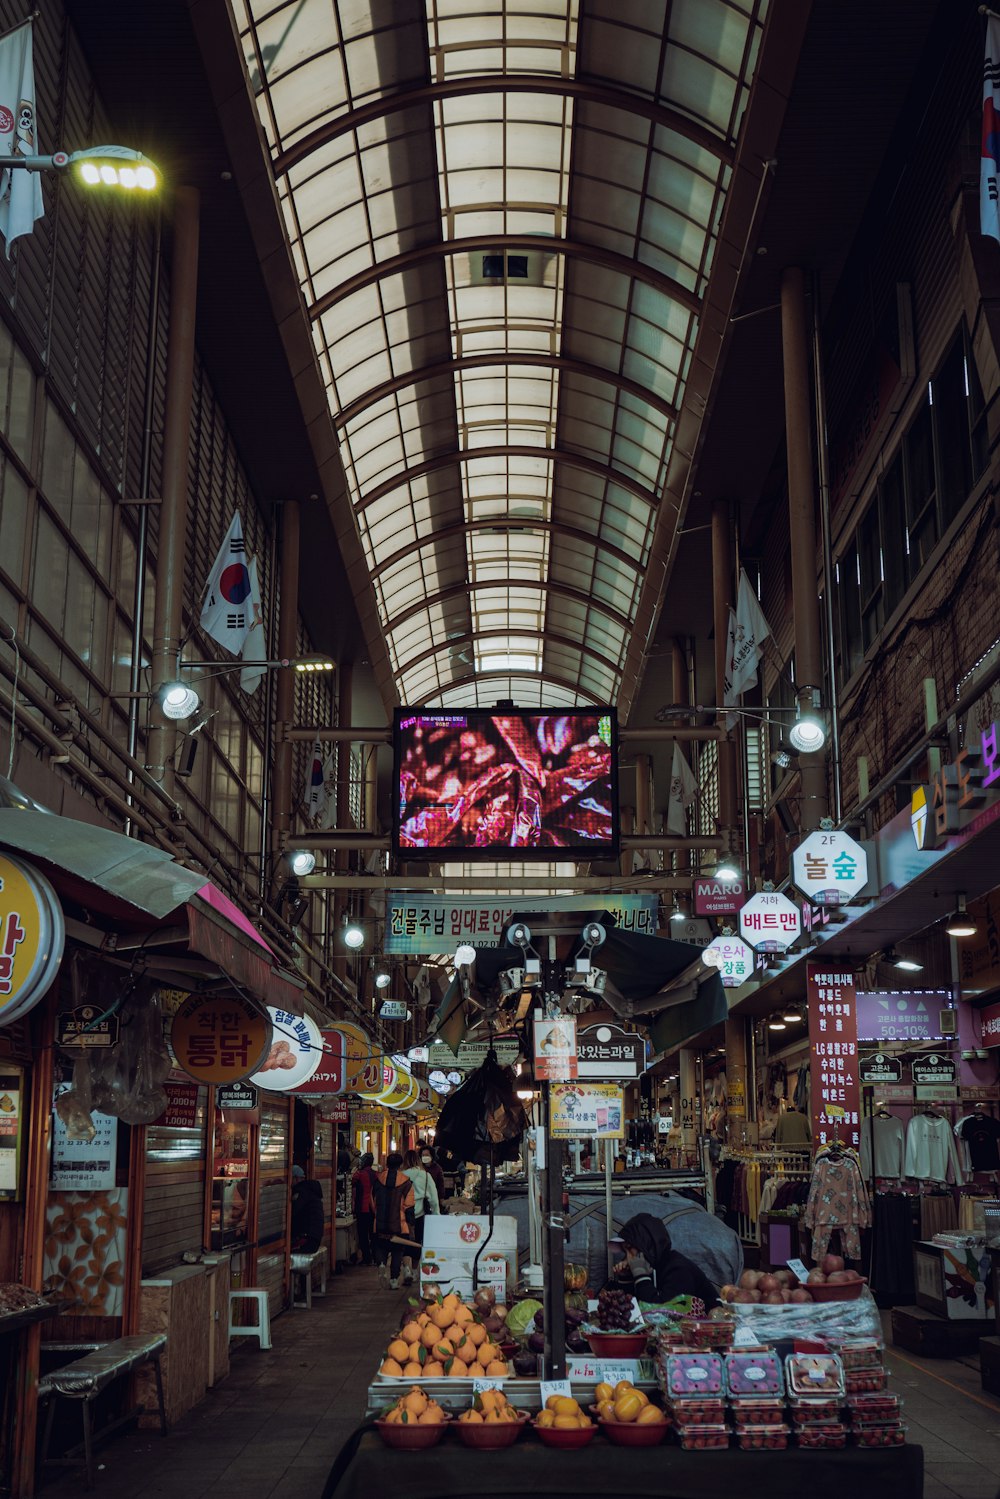 Un mercado interior con una gran pantalla en el techo